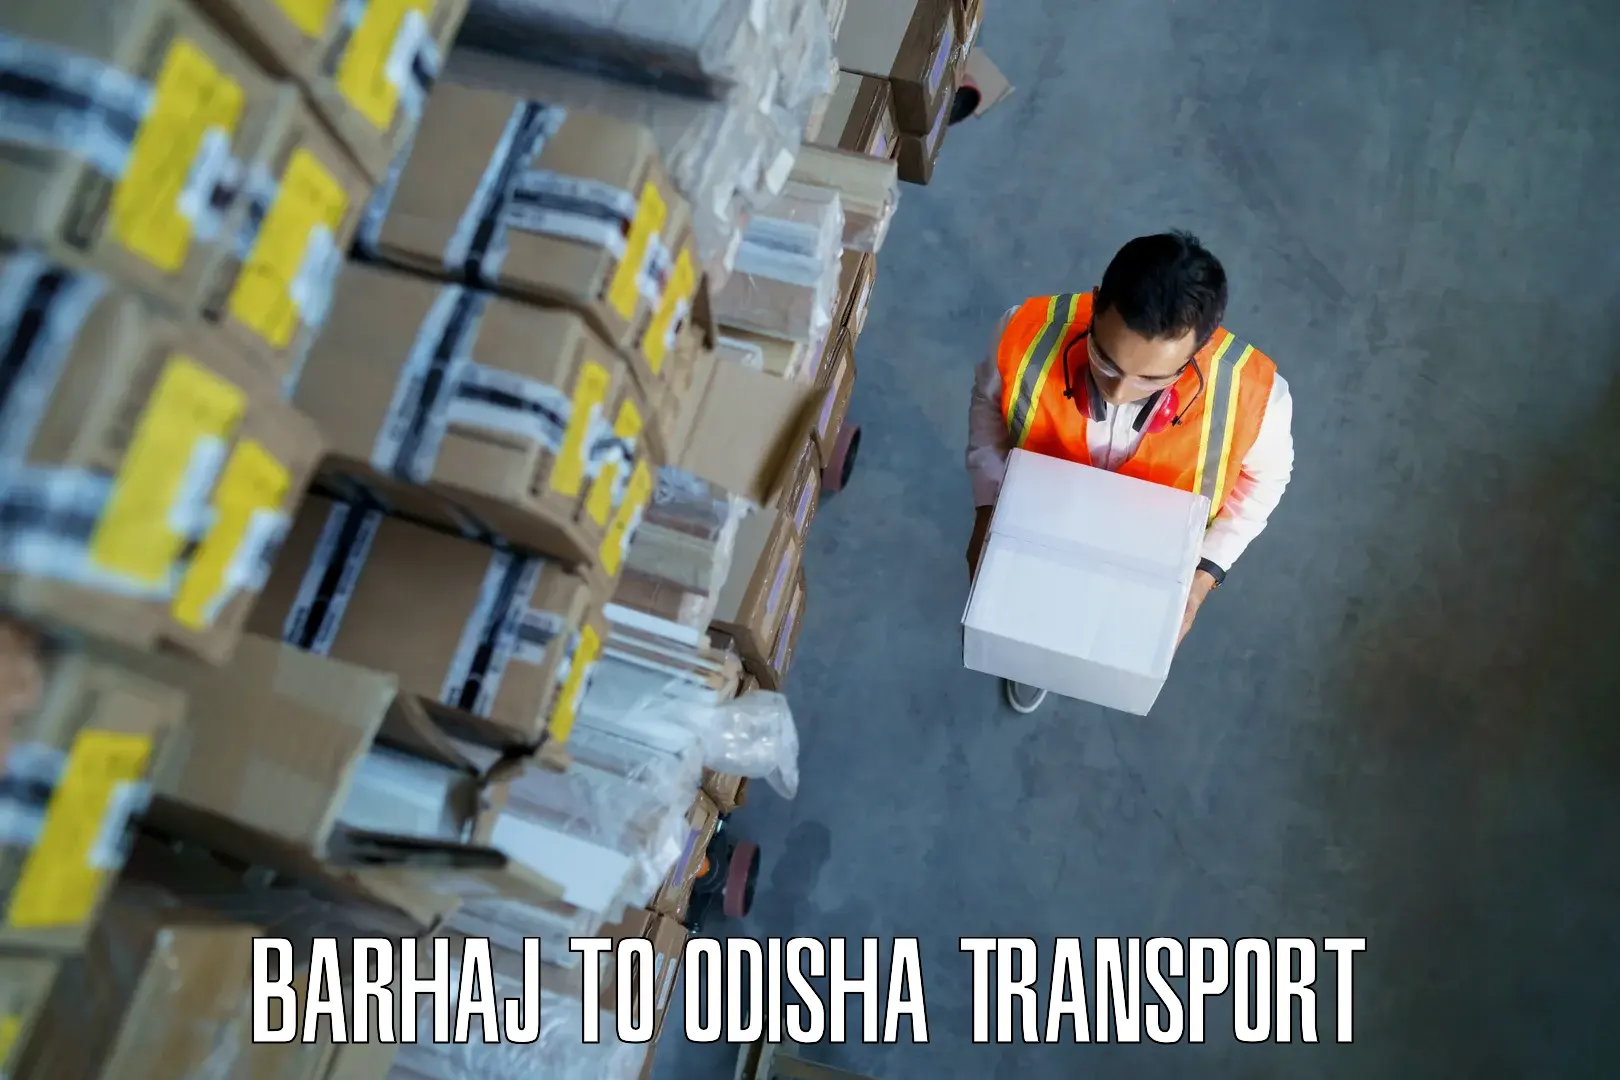 Goods delivery service Barhaj to Paikana